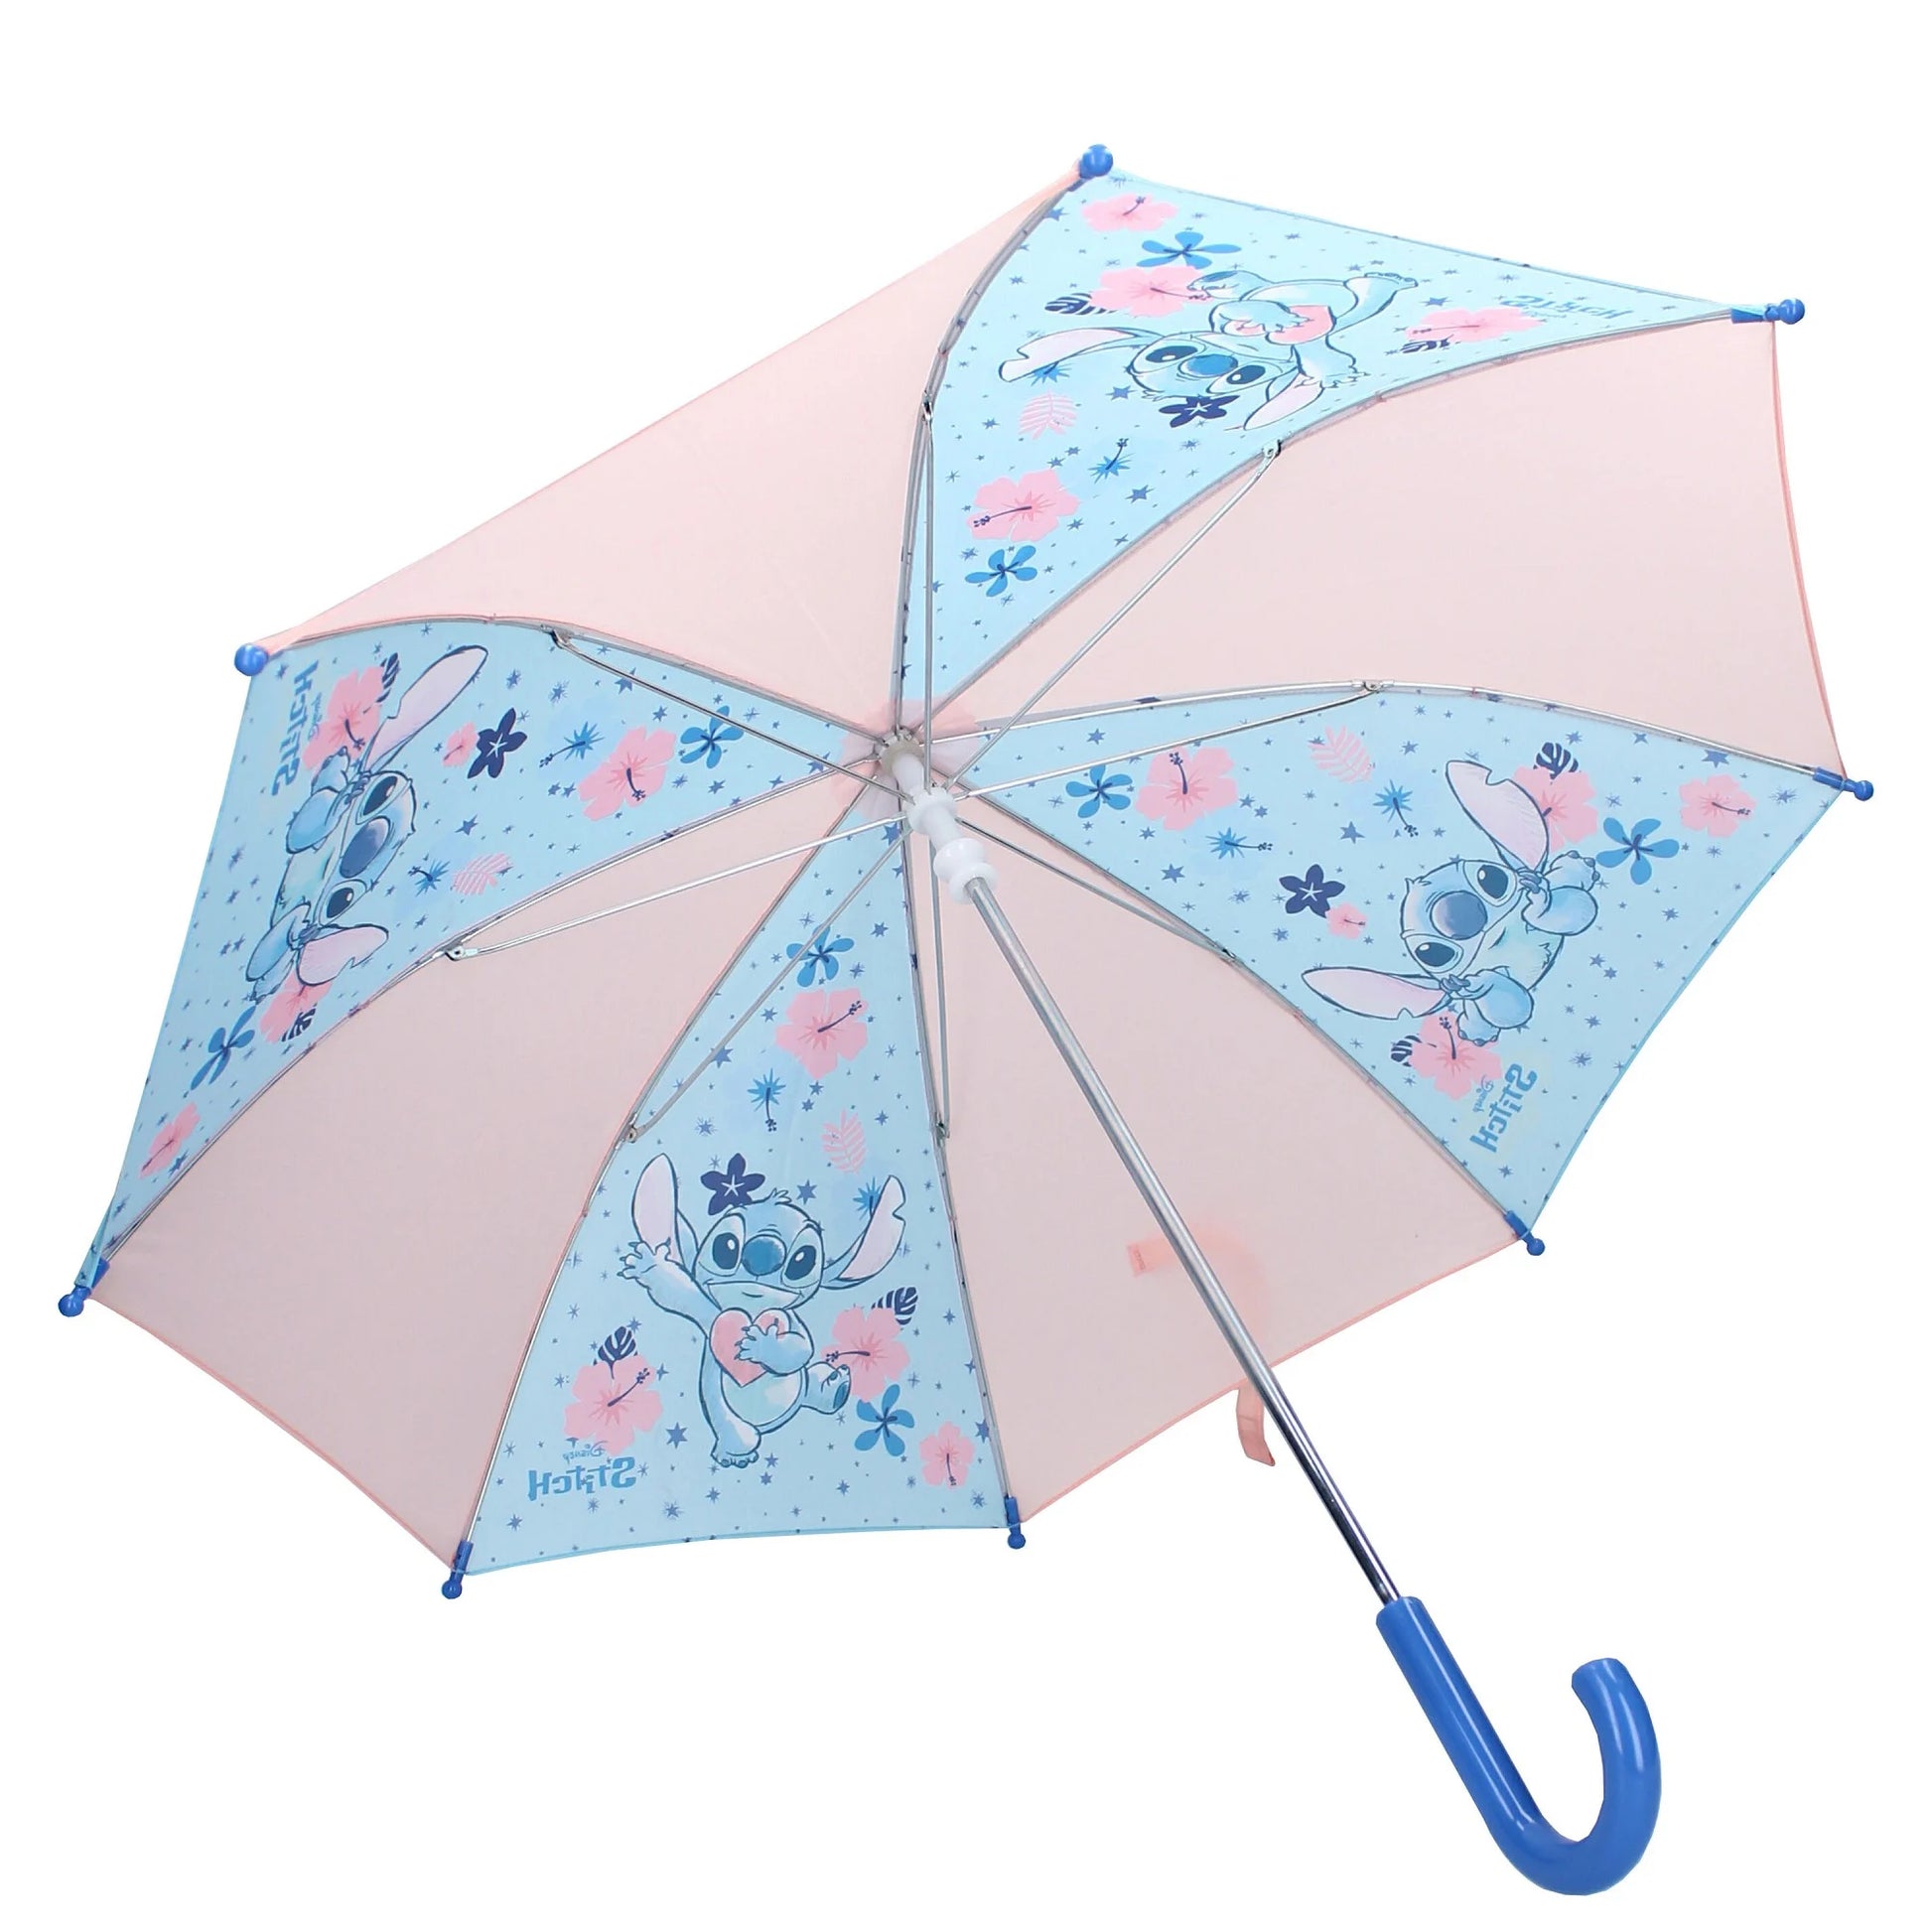 Gemakkelijk te openen en te sluiten, deze lichtgewicht Stitch-paraplu is een must-have accessoire.